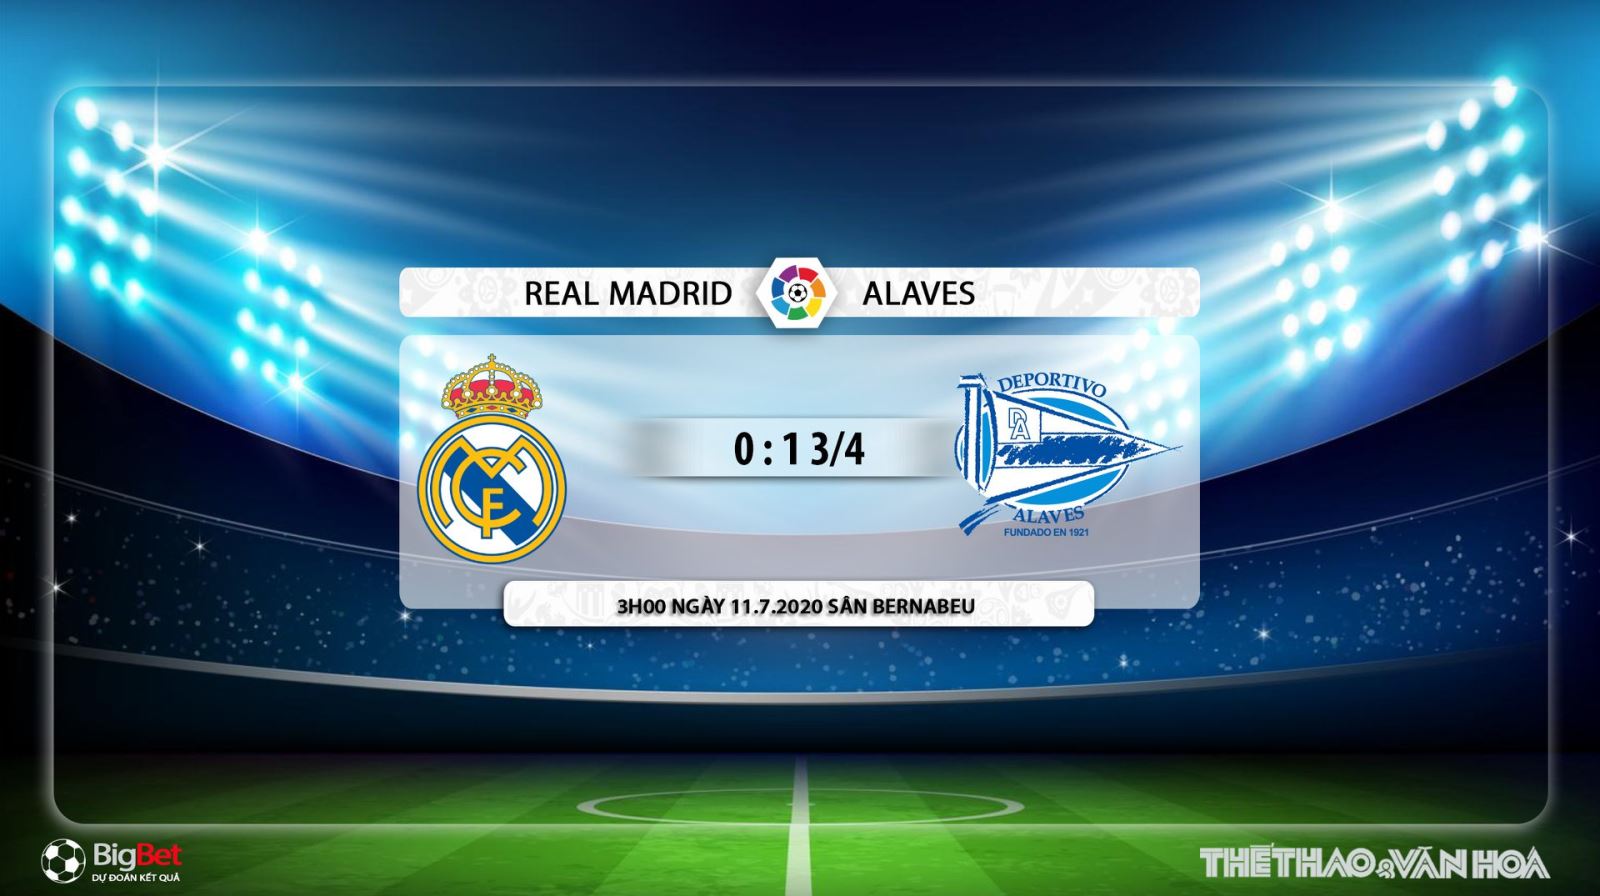 Real Madrid vs Alaves, trực tiếp Real Madrid vs Alaves, lịch thi đấu bóng đá hôm nay, soi kèo, kèo bóng đá, soi kèo Real Madrid vs Alaves, Real Madrid, Alaves